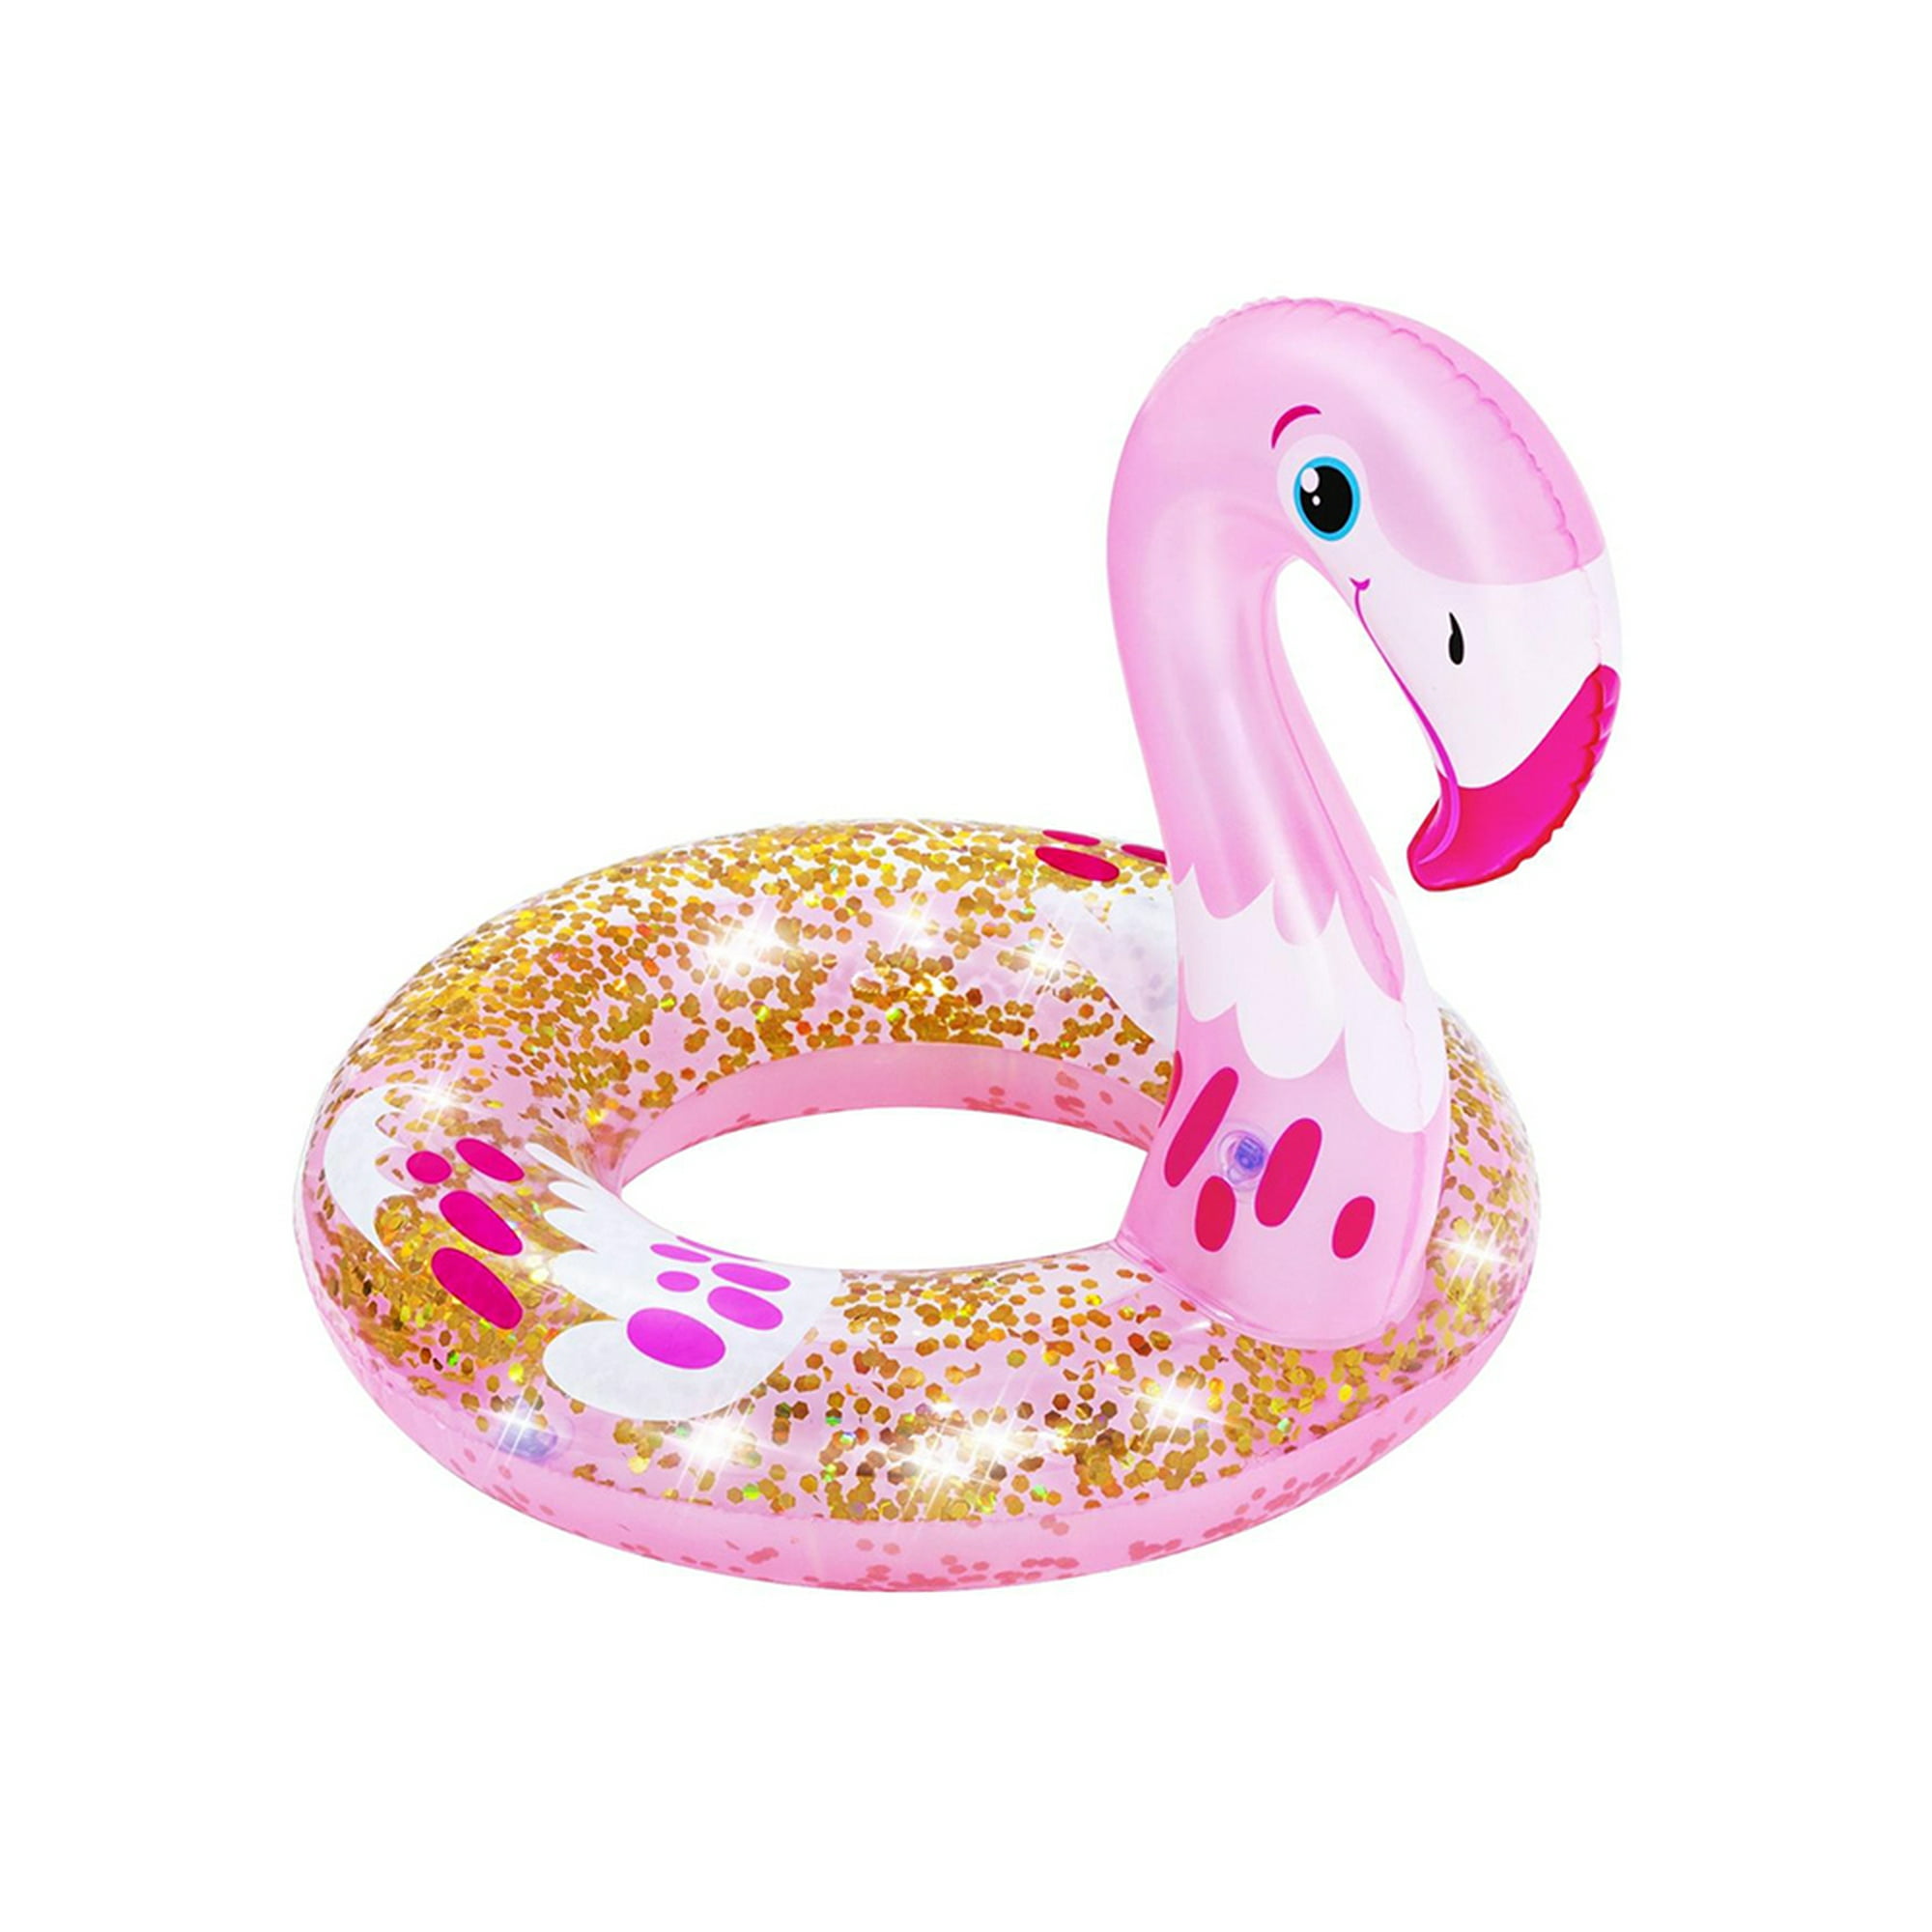 Salvadanaio Contamonete Fantasia Flamingo